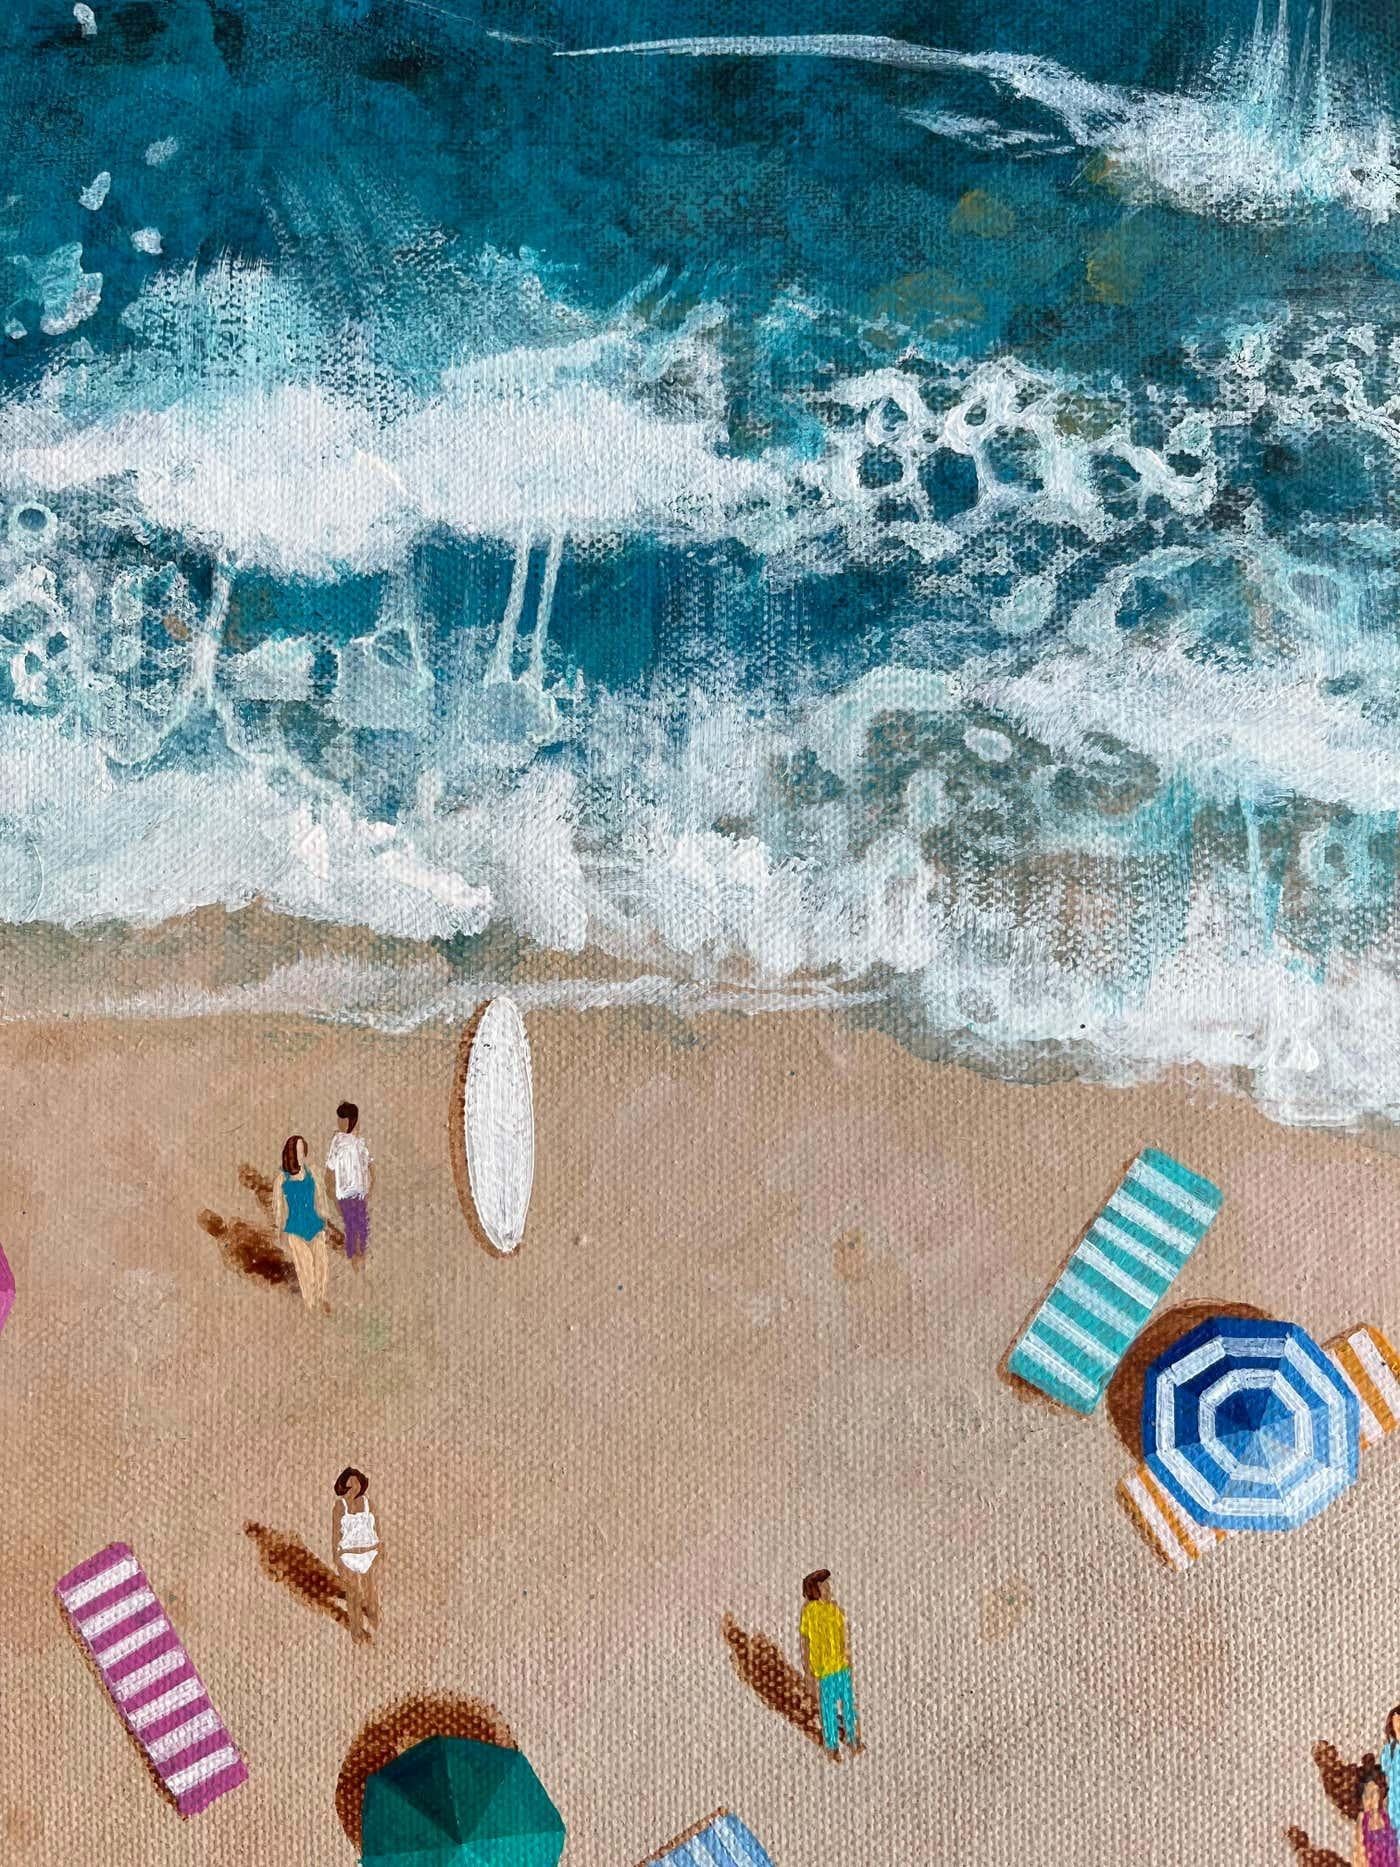 Sandbar-originale moderne Impressionismus-Meereslandschaft-Ölgemälde-Zeitgenössische Kunst (Grau), Landscape Painting, von Lenny Cornforth